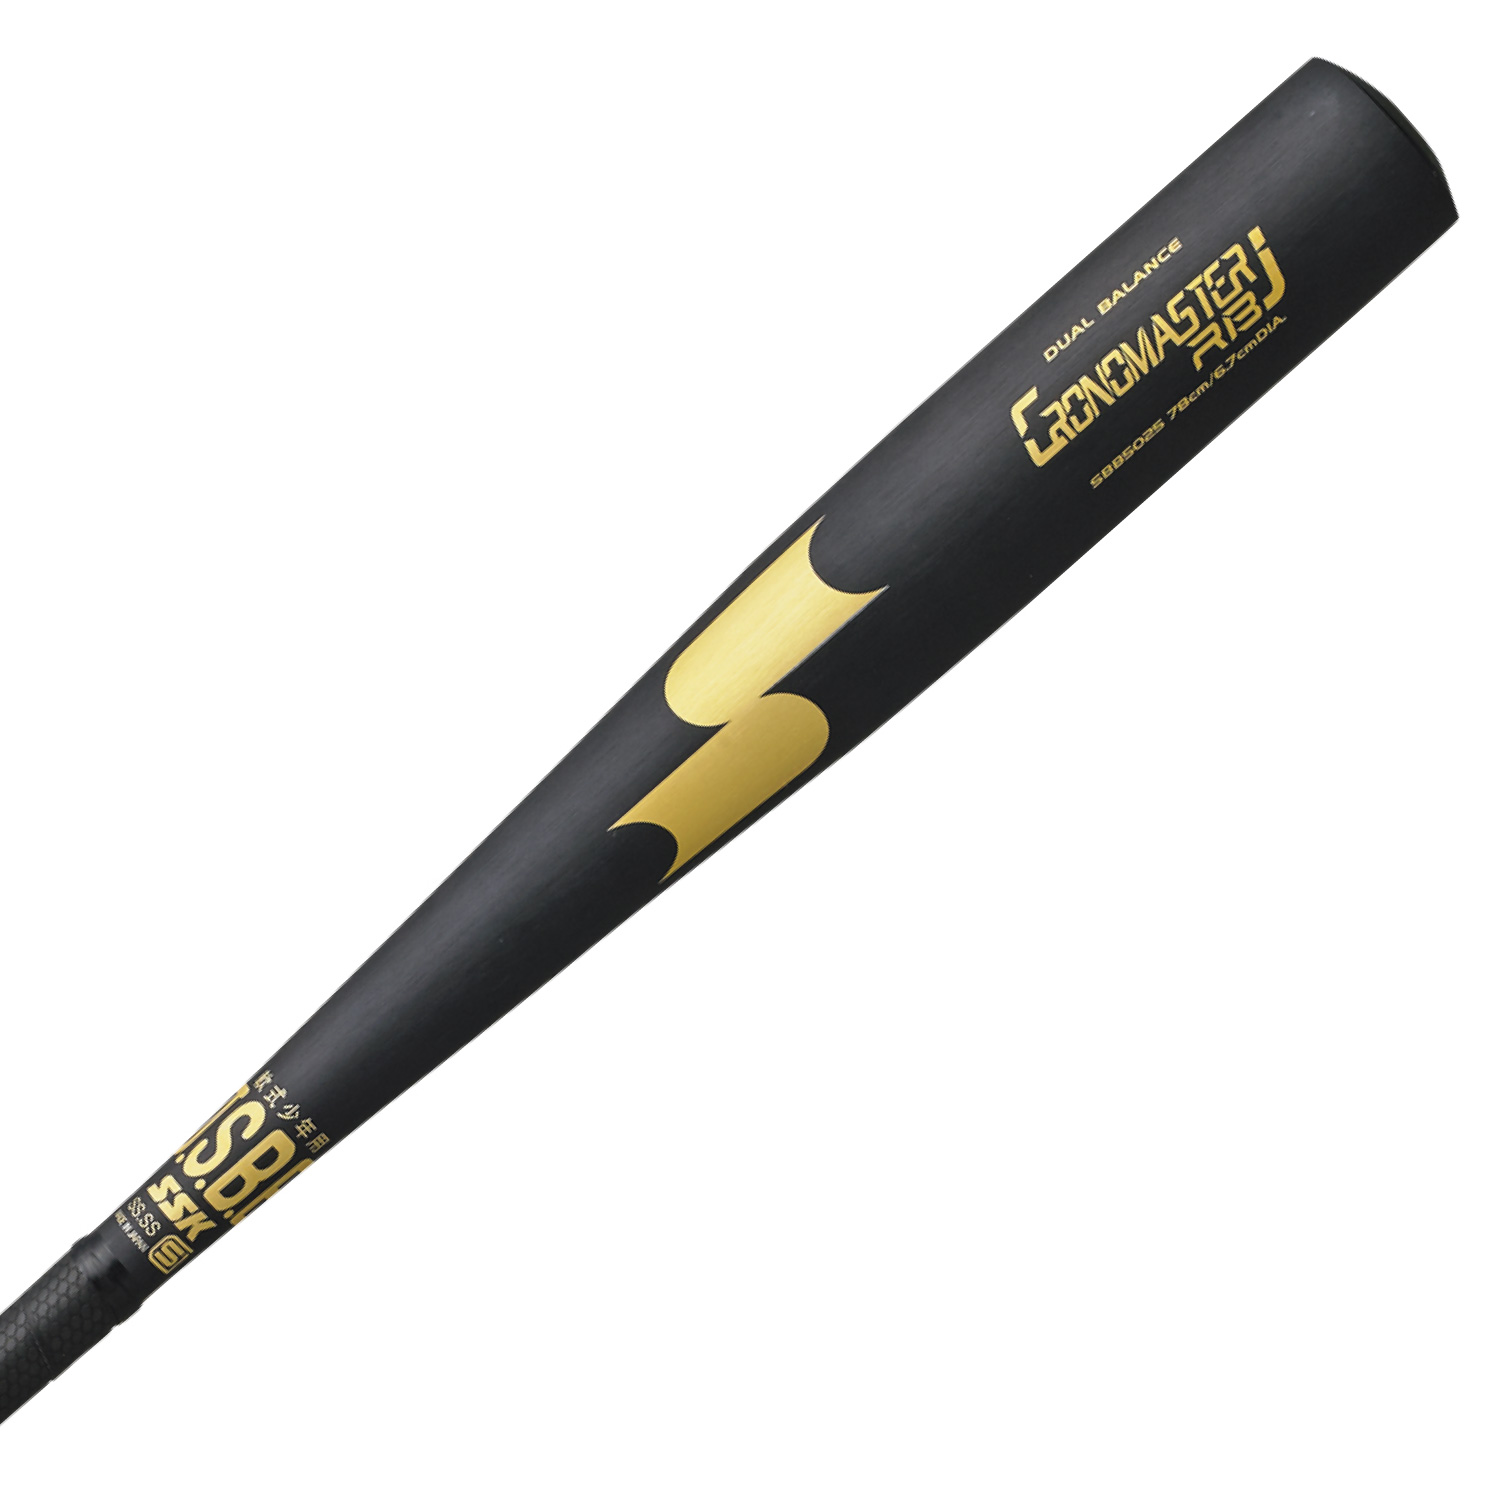 SSK硬式バット金属 高校野球対応 900g クロノマスター 硬式金属バット - 野球